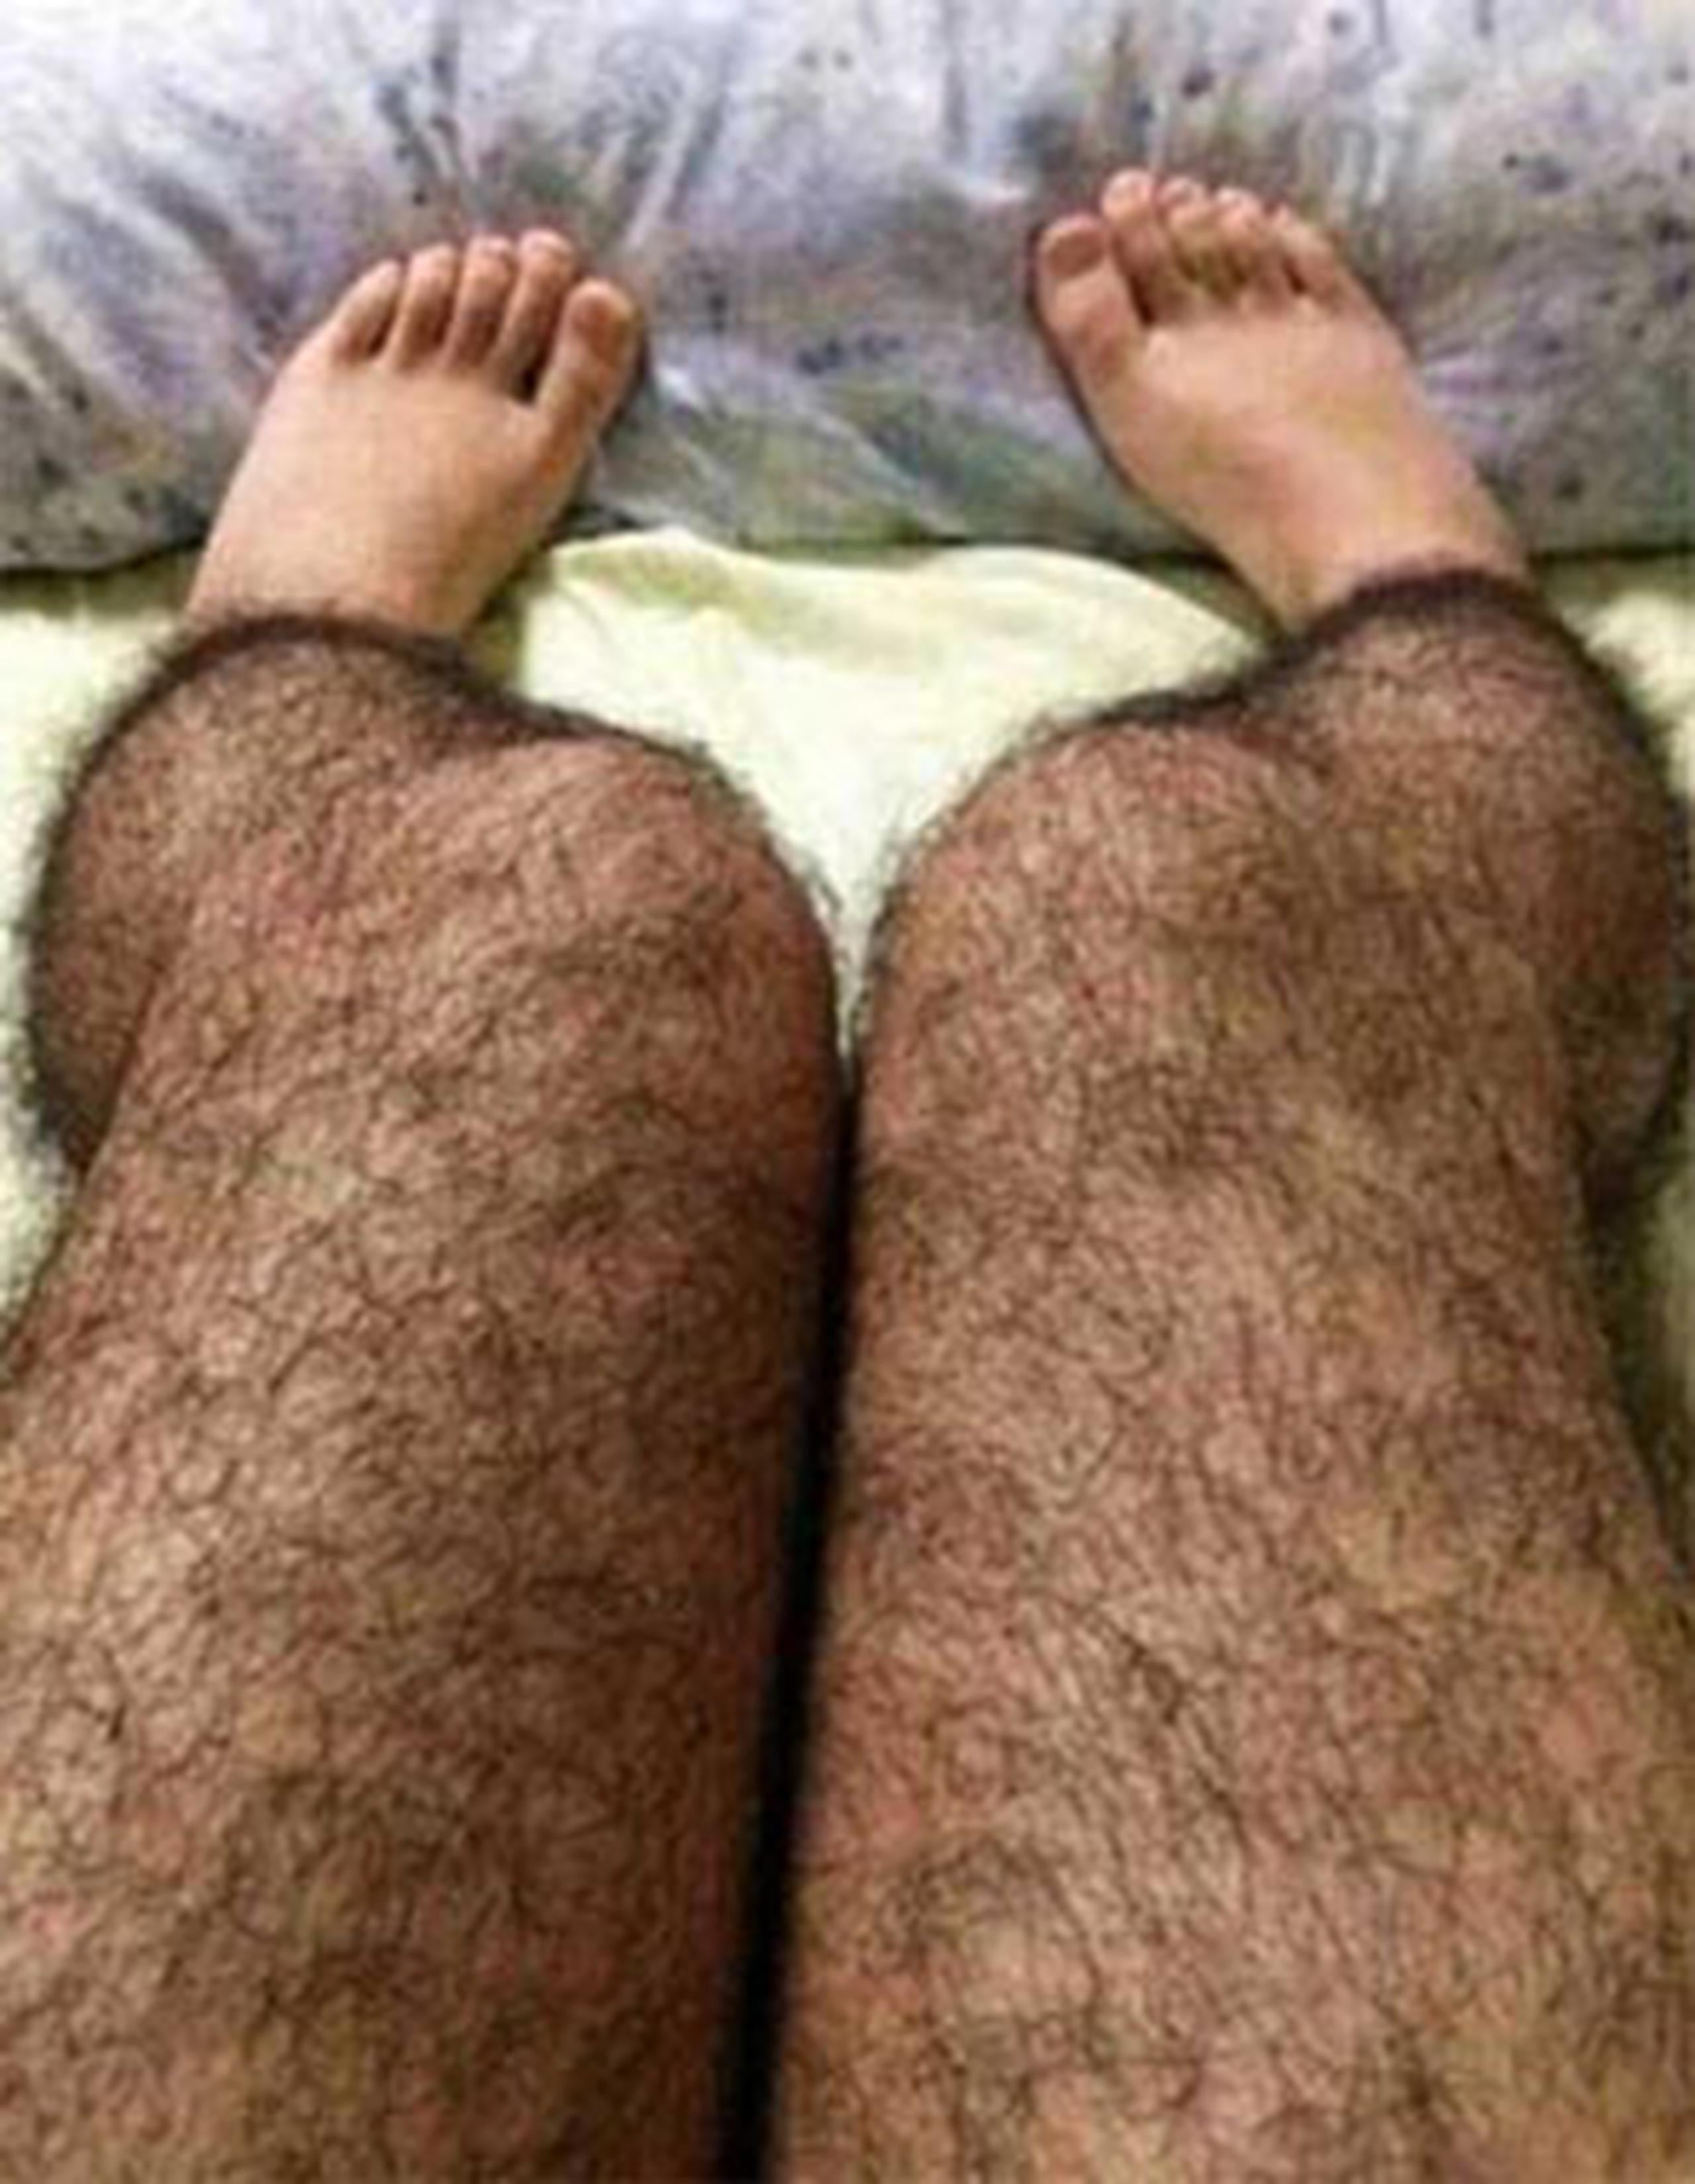 Tres estudiantes indios diseñaron unas medias para mujeres que simulan tener las piernas cubiertas de pelos, similares a las de los hombres, según informó el diario argentino La Voz. (Suministrada)